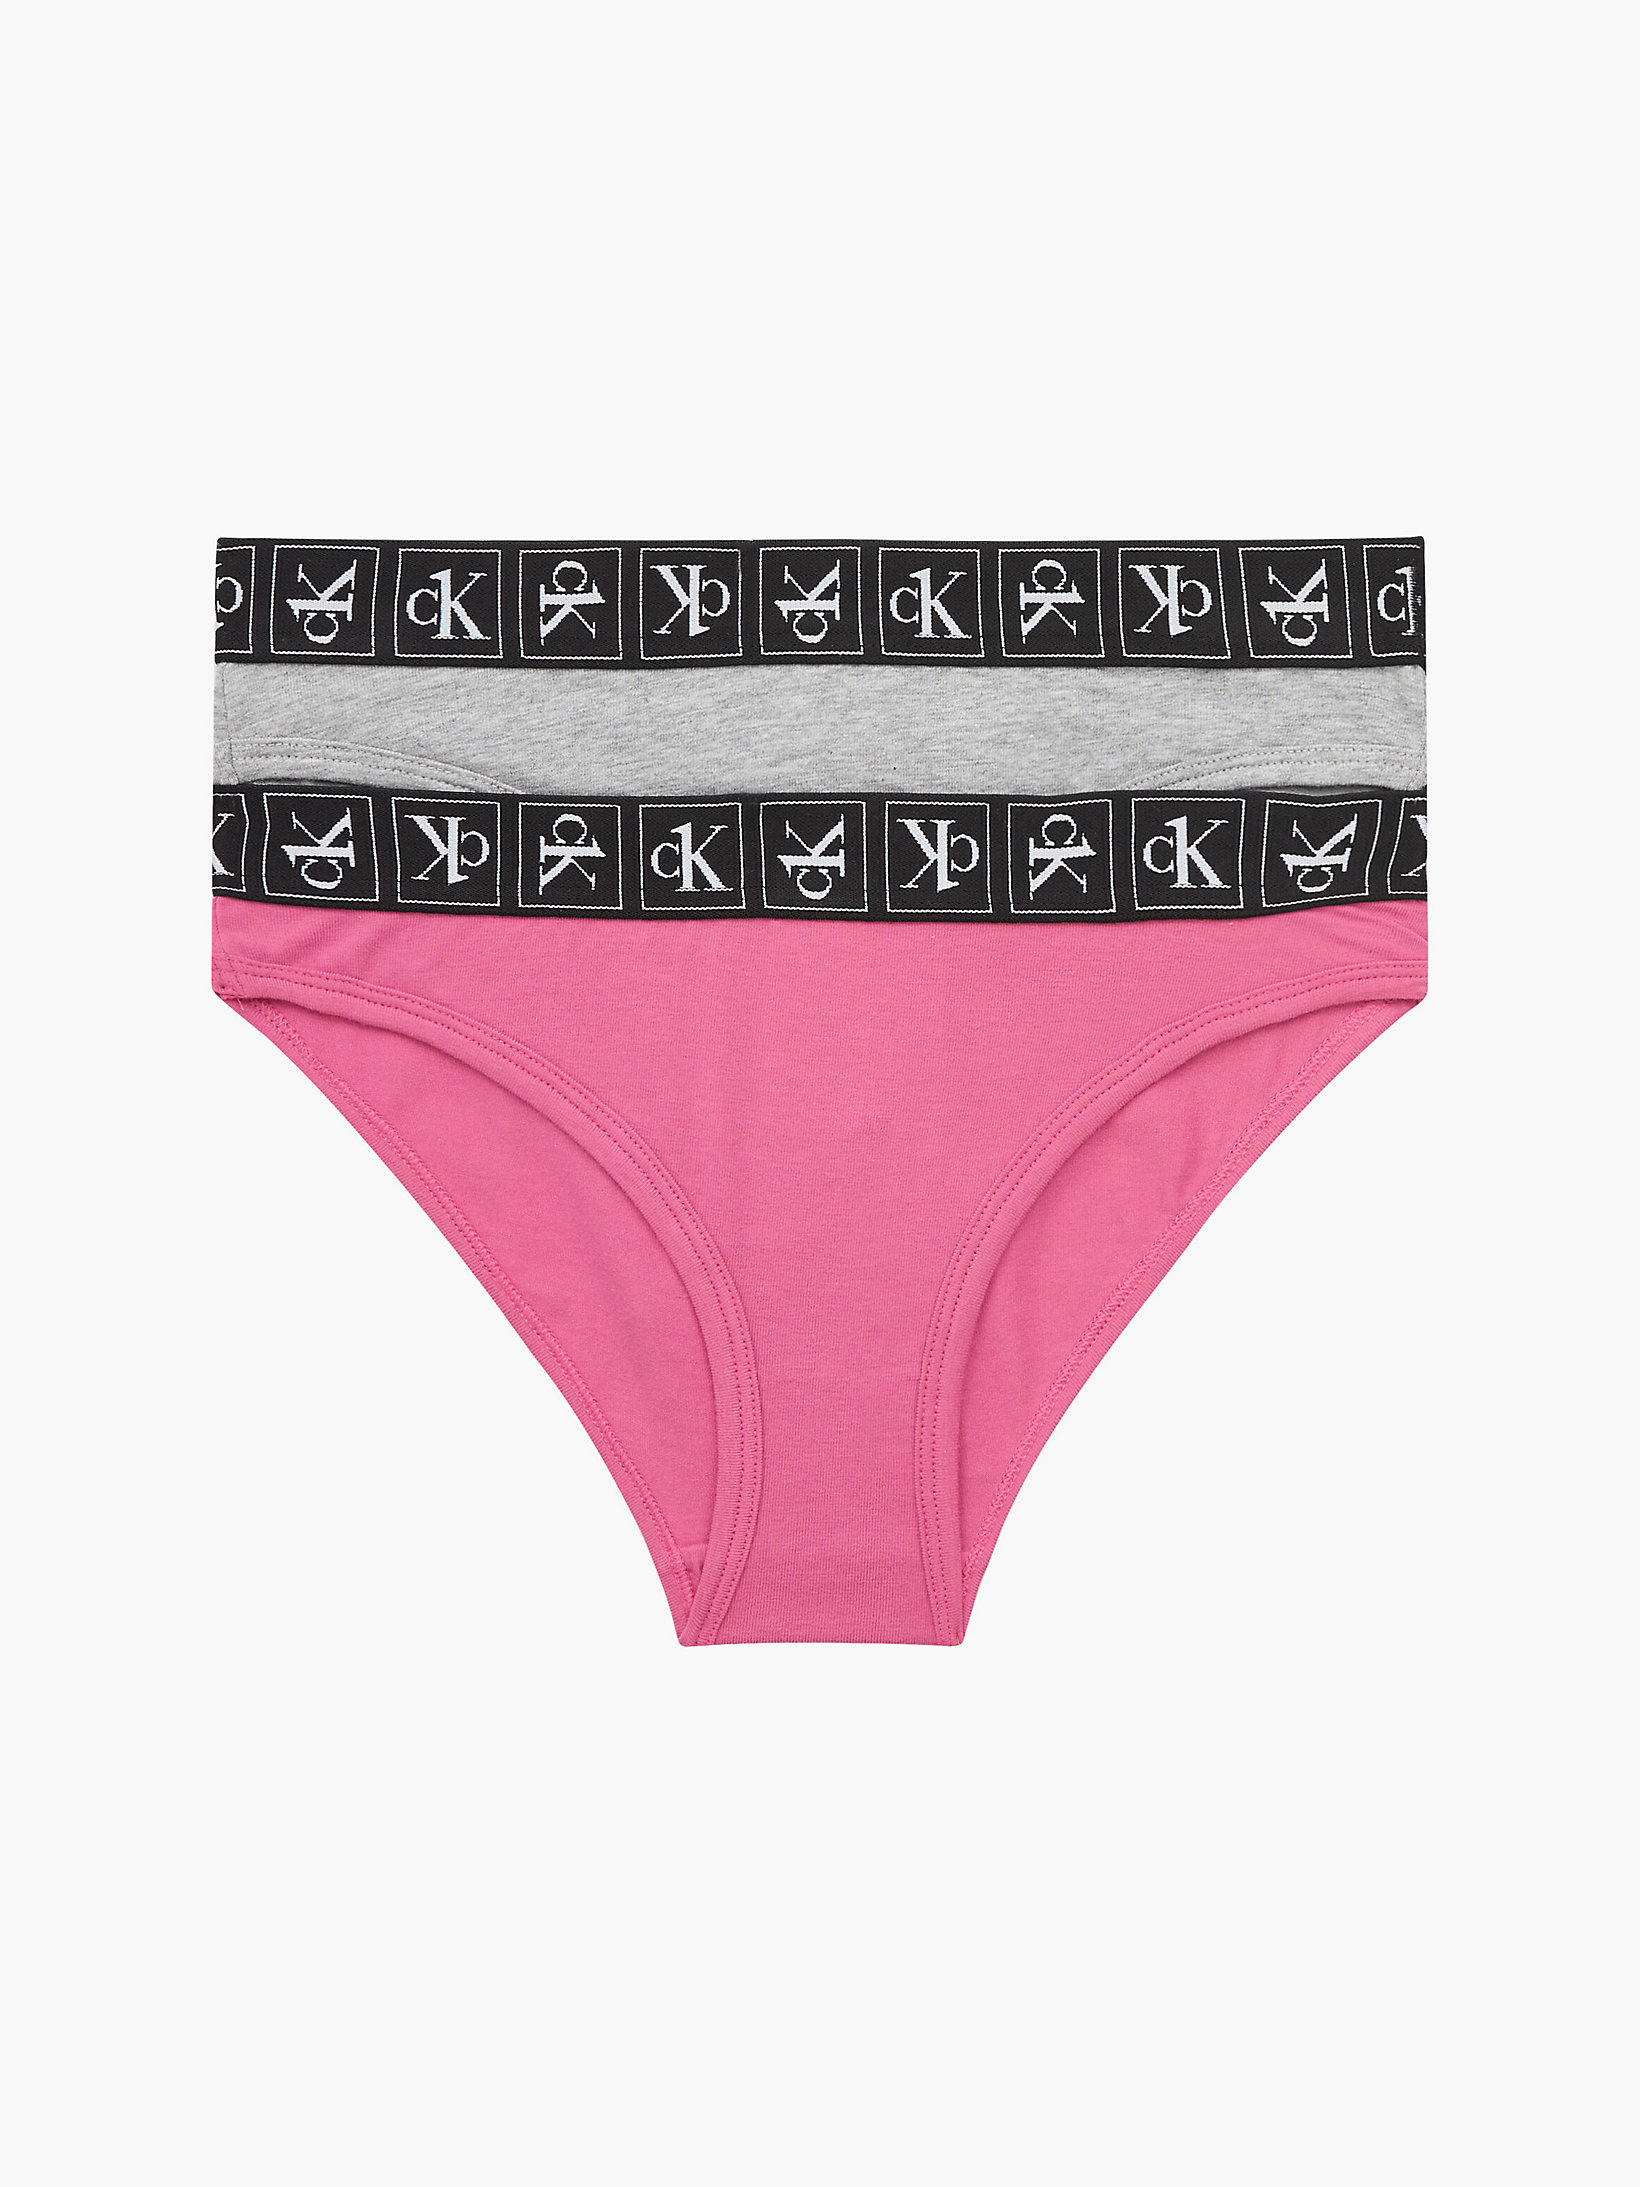 Pinkhydrangea/greyheather 2 Pack Girls Bikini Briefs - CK One undefined girls Calvin Klein